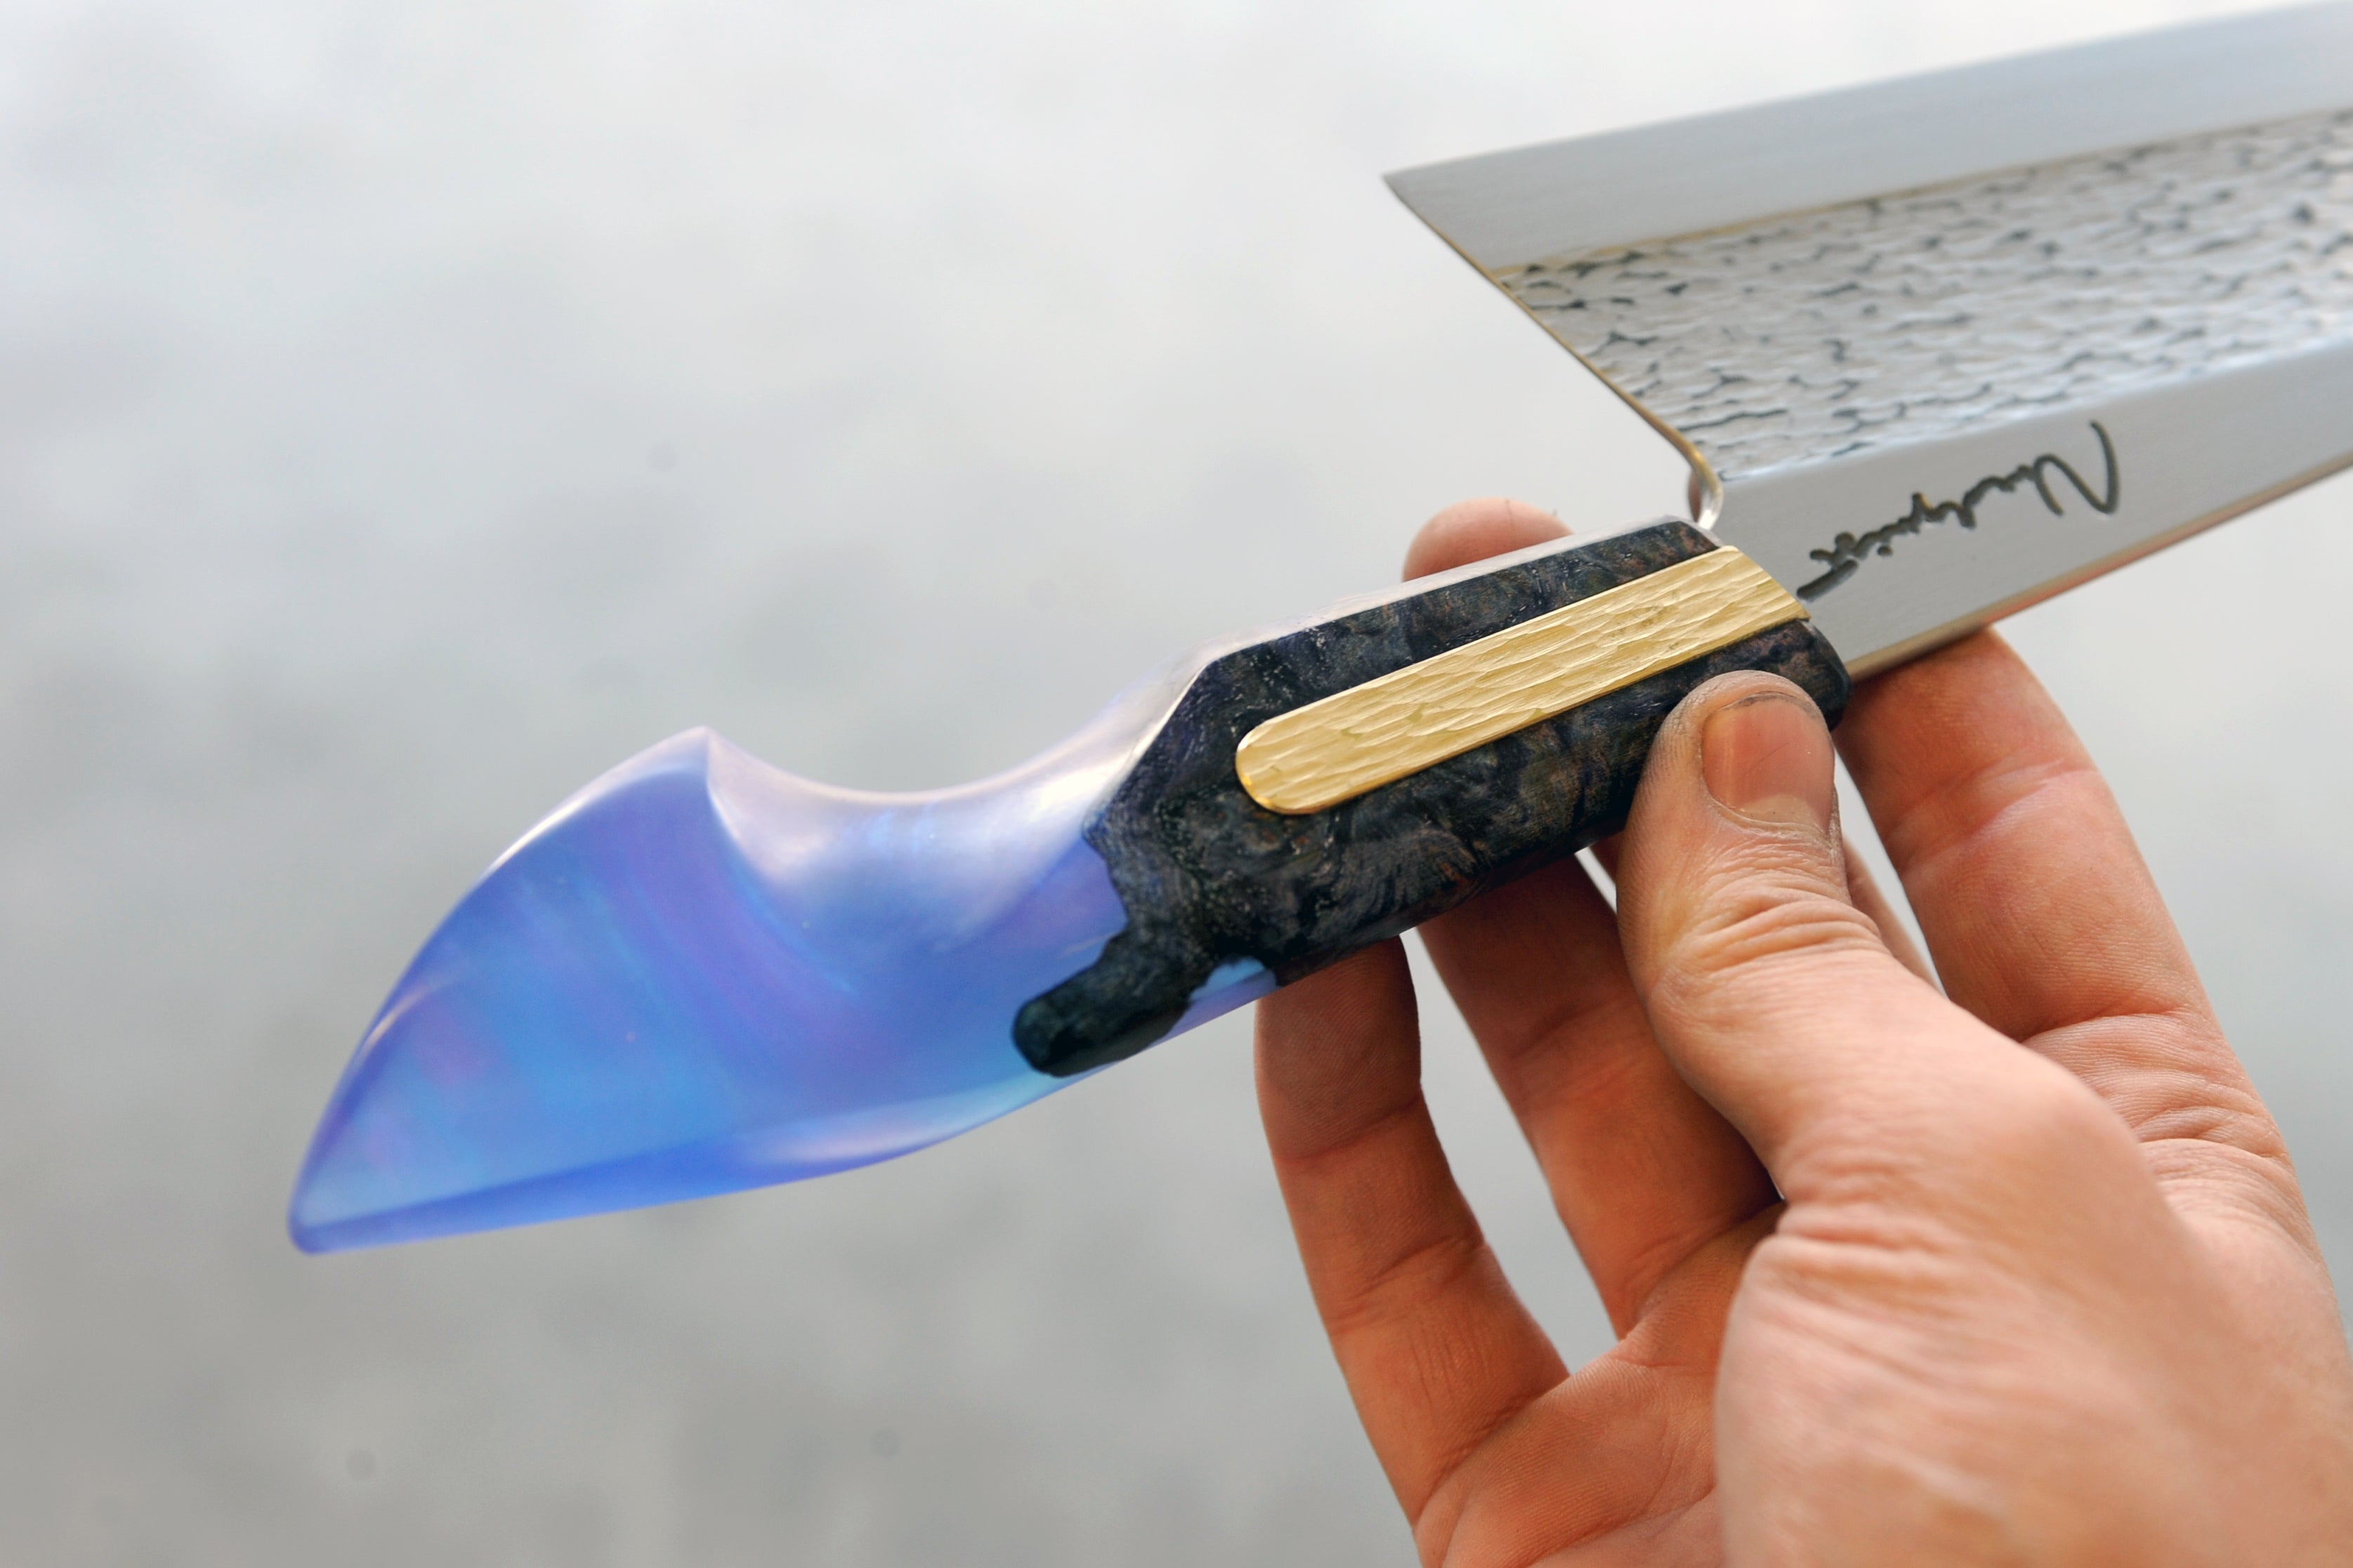 Buy KITCHEN KNIFE GYUTO 6 AEB-L STABILIZED ALDER EBONY G-CUSTOM